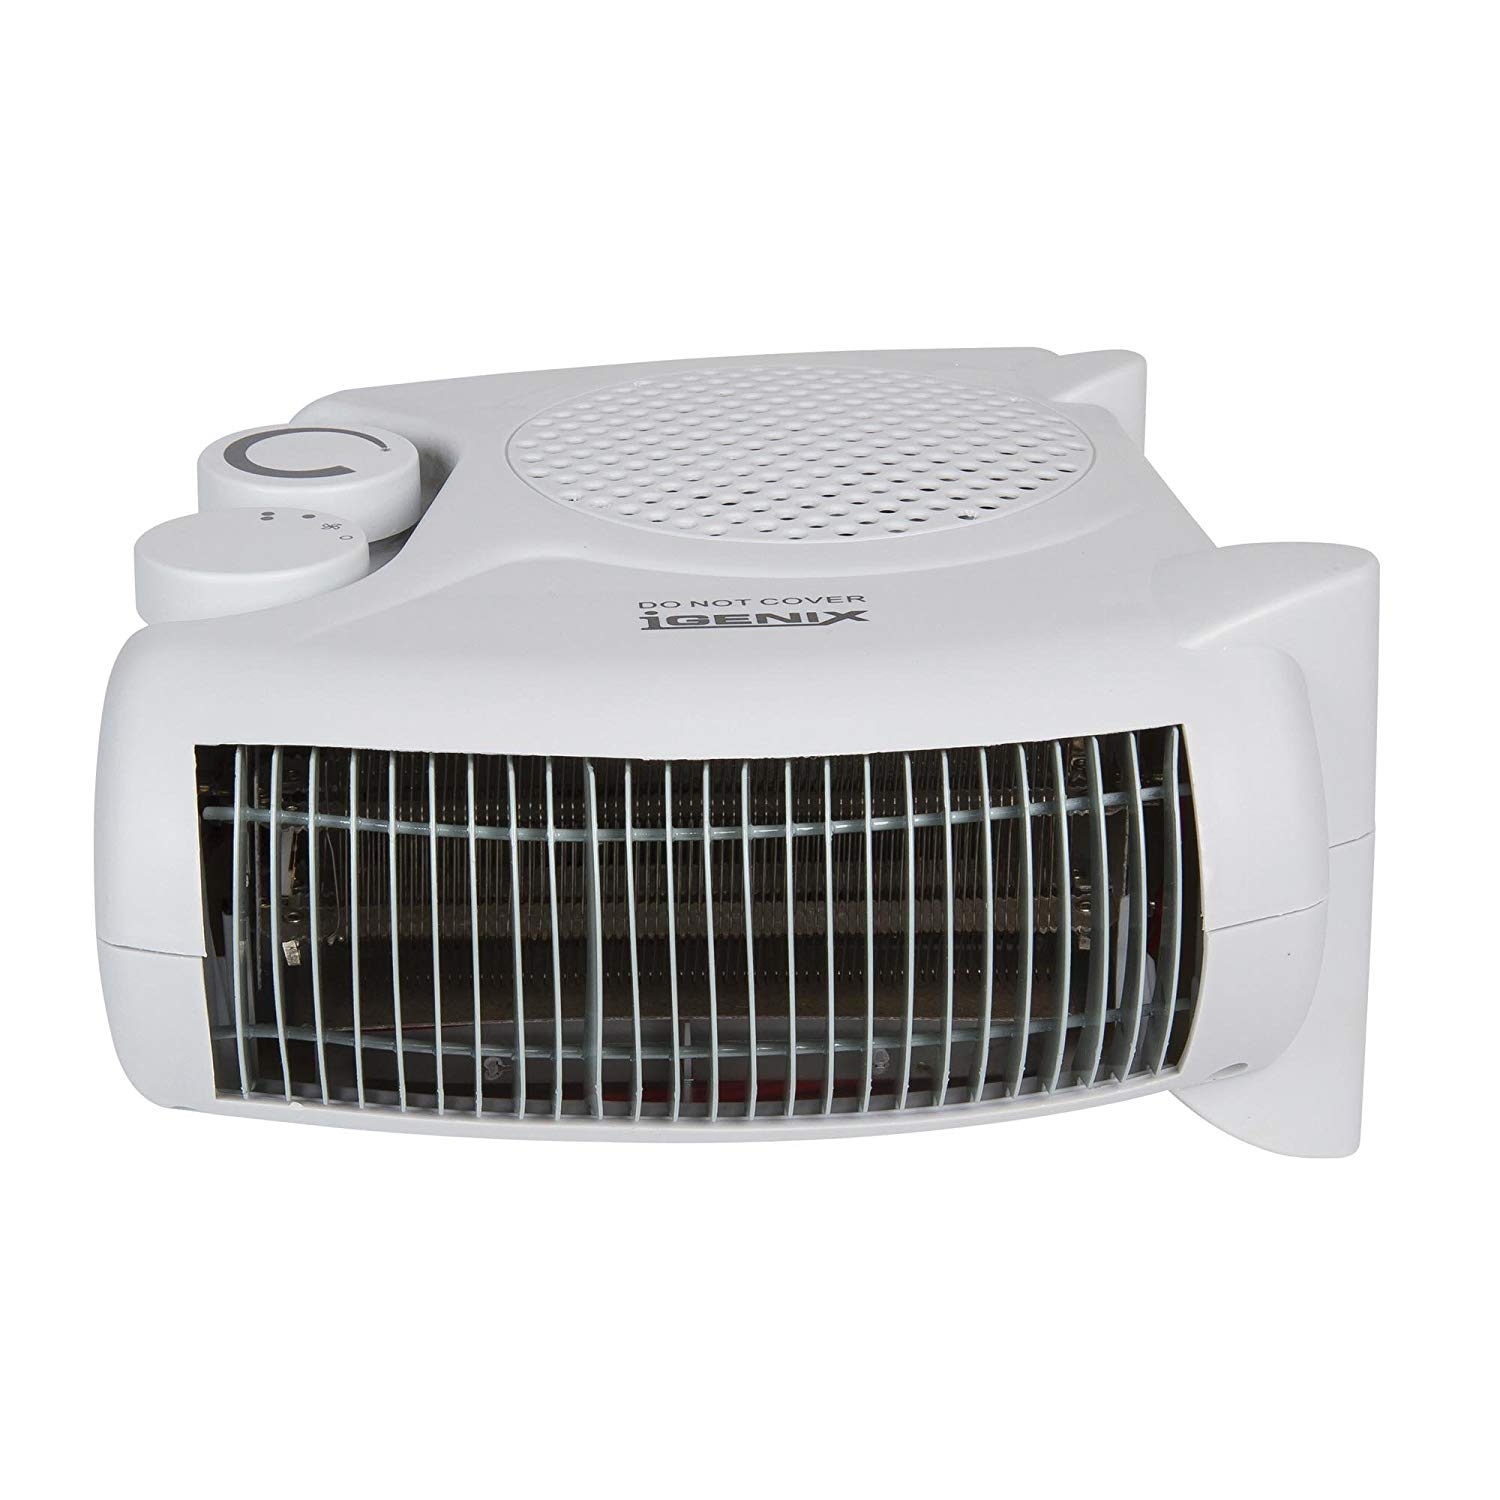 Igenix 2kw Fan Heater (white) - 0